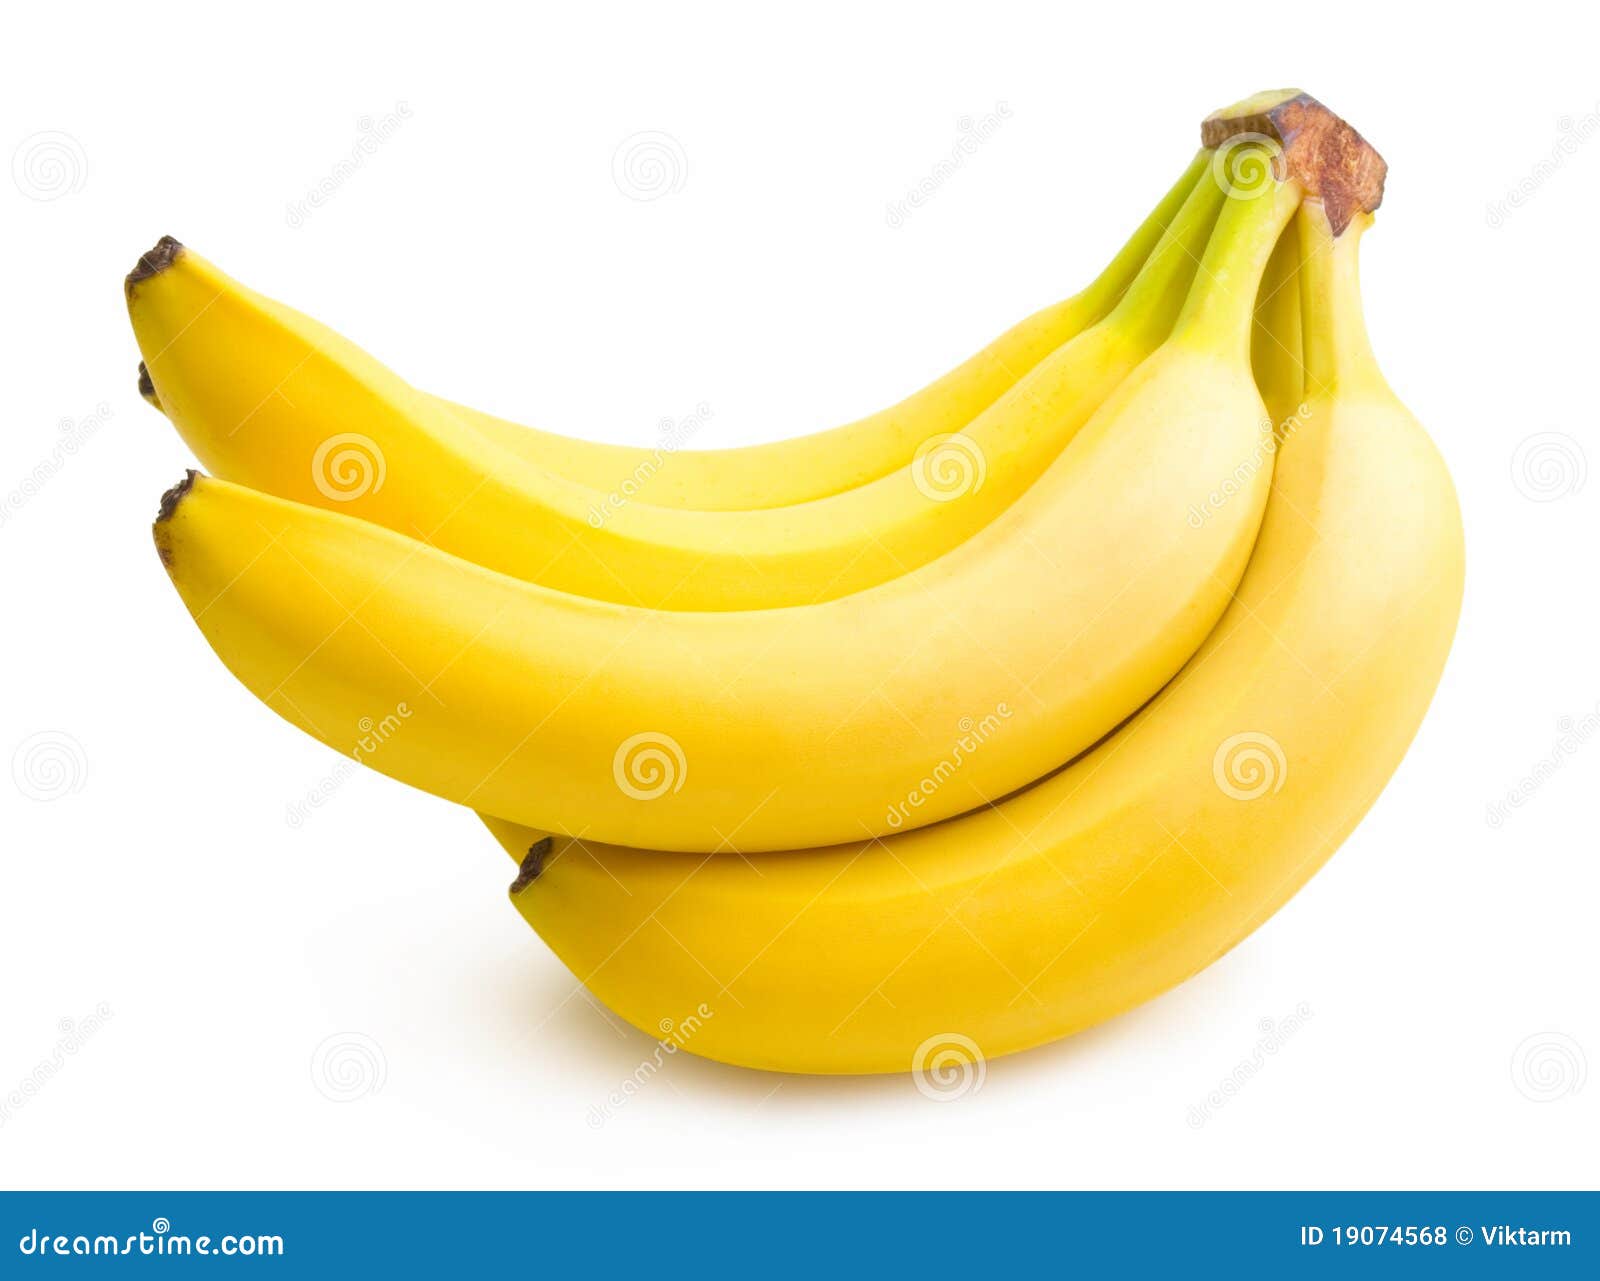 banana bunch